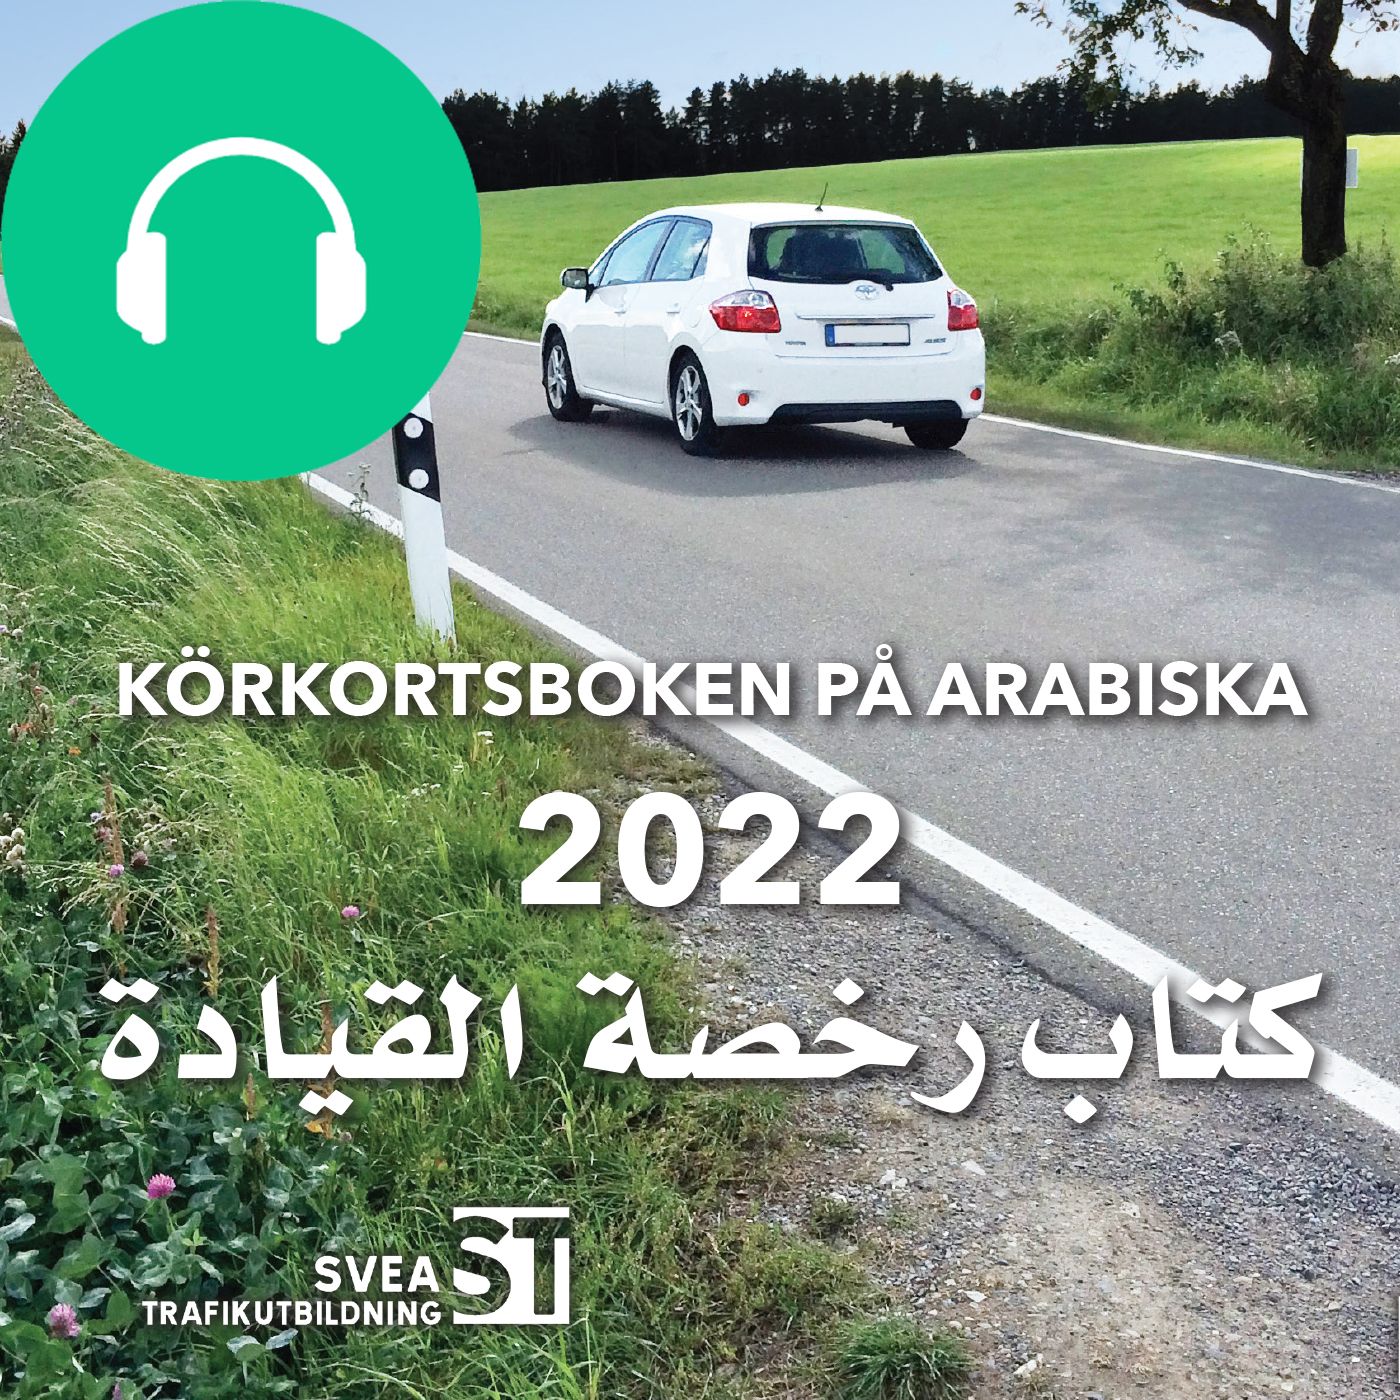 Körkortsboken på Arabiska 2022, audiobook by Svea Trafikutbildning